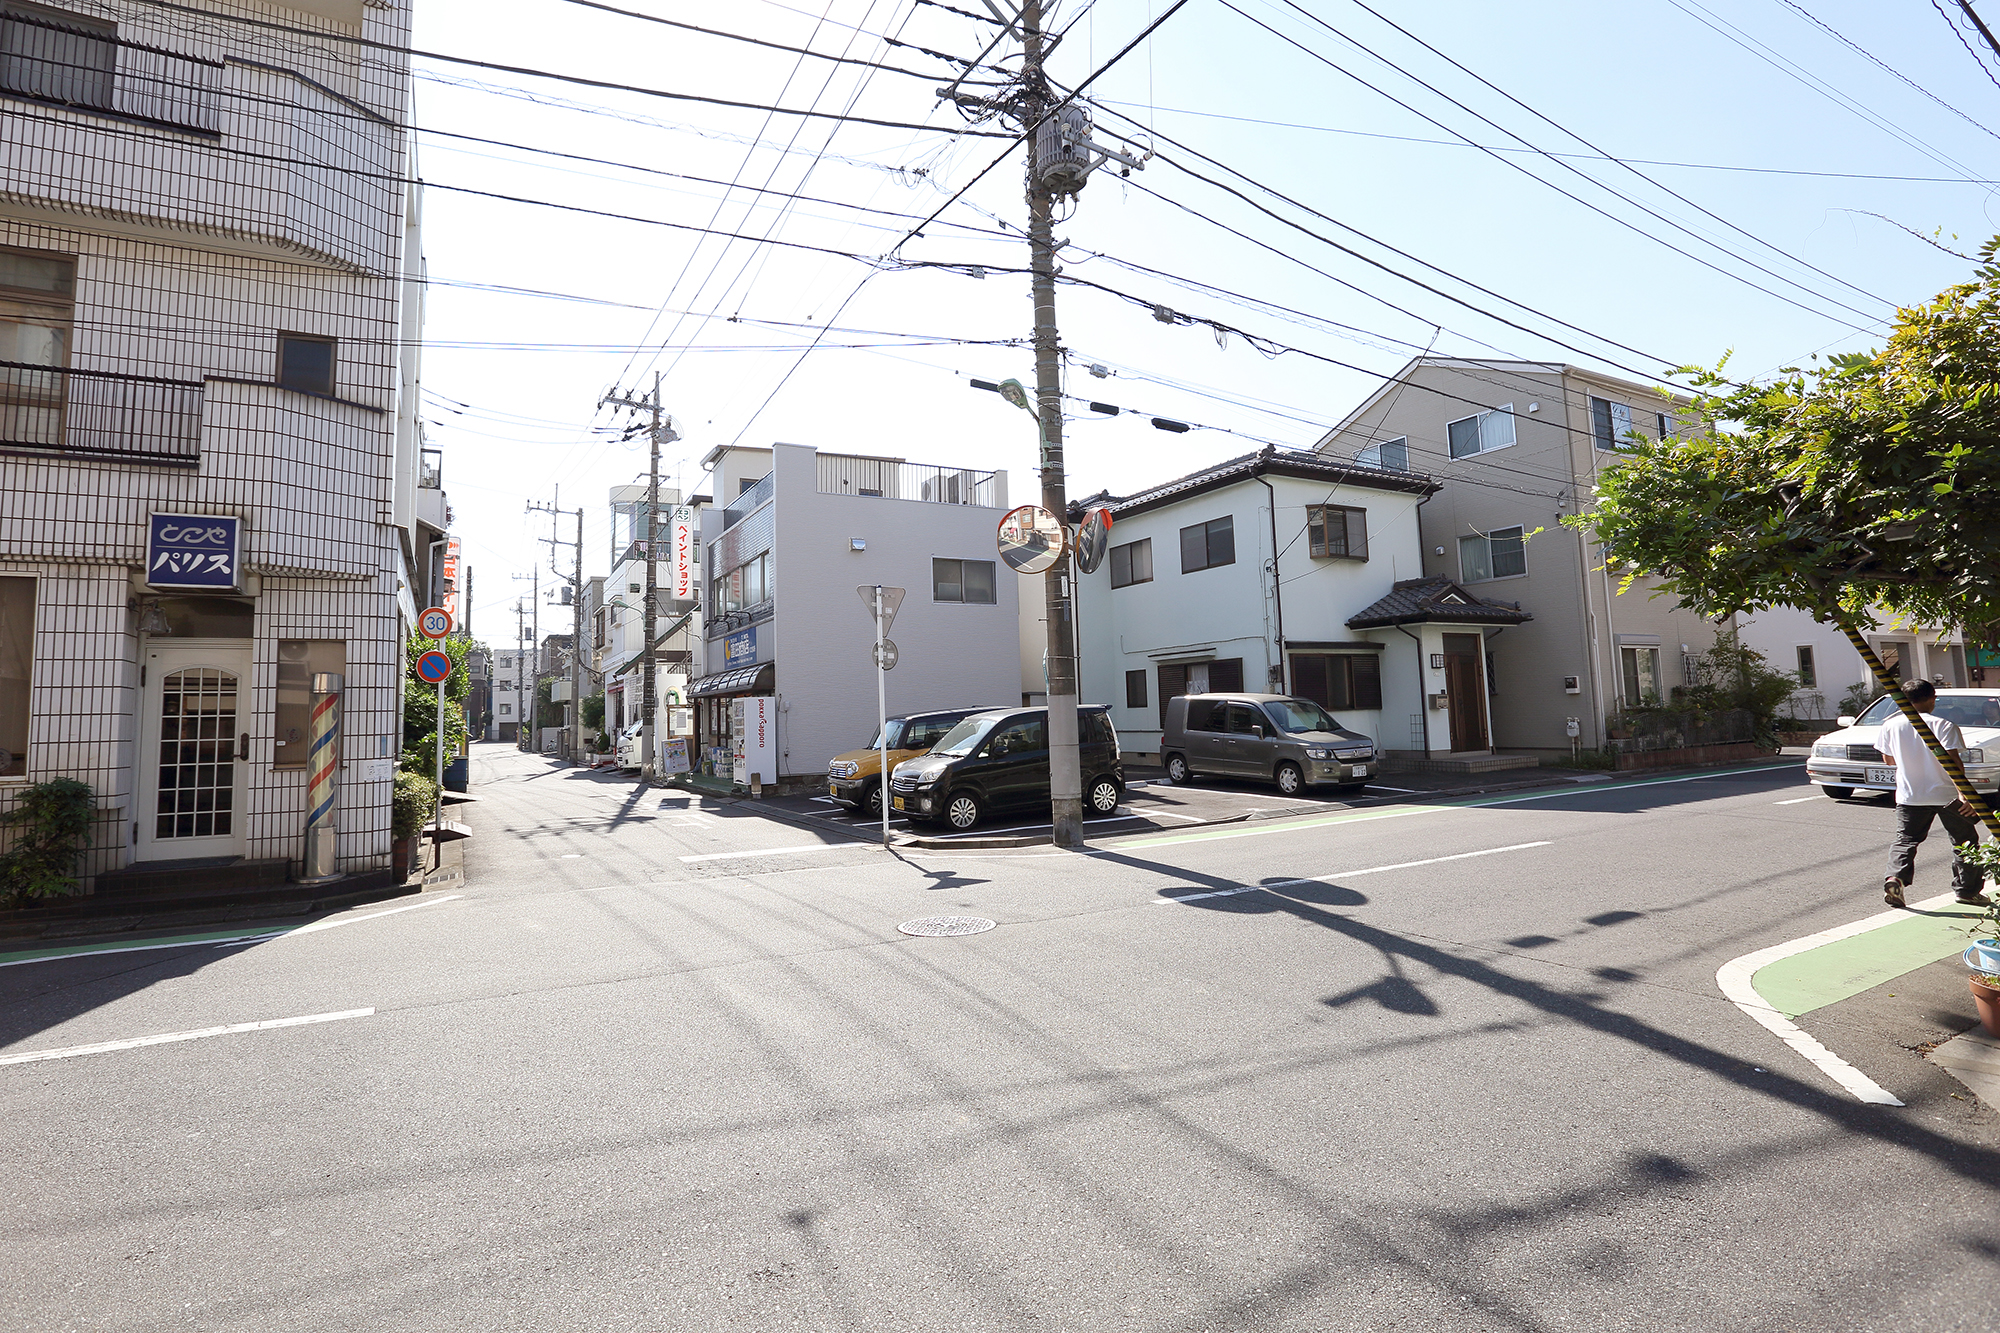 再度直進です。右手に飯塚小学校が見えてきます ので交差点を左折です。